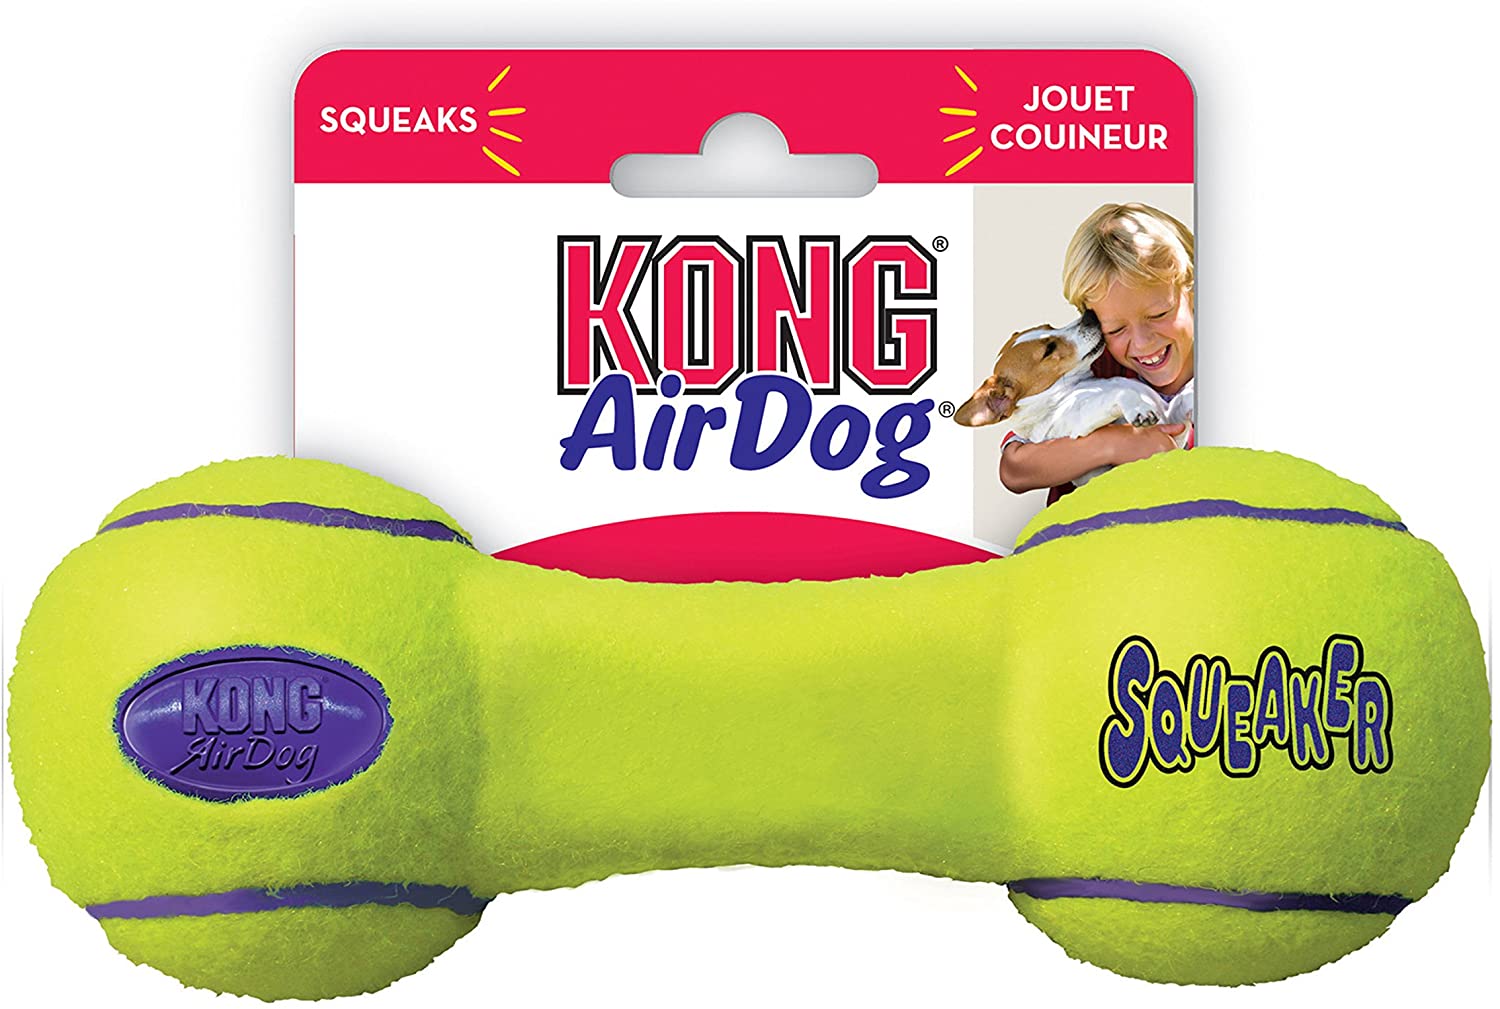  KONG - AirDog® Squeaker Dumbbell - Juguete sonoro y saltarín, tejido pelota de tenis - Raza grande 